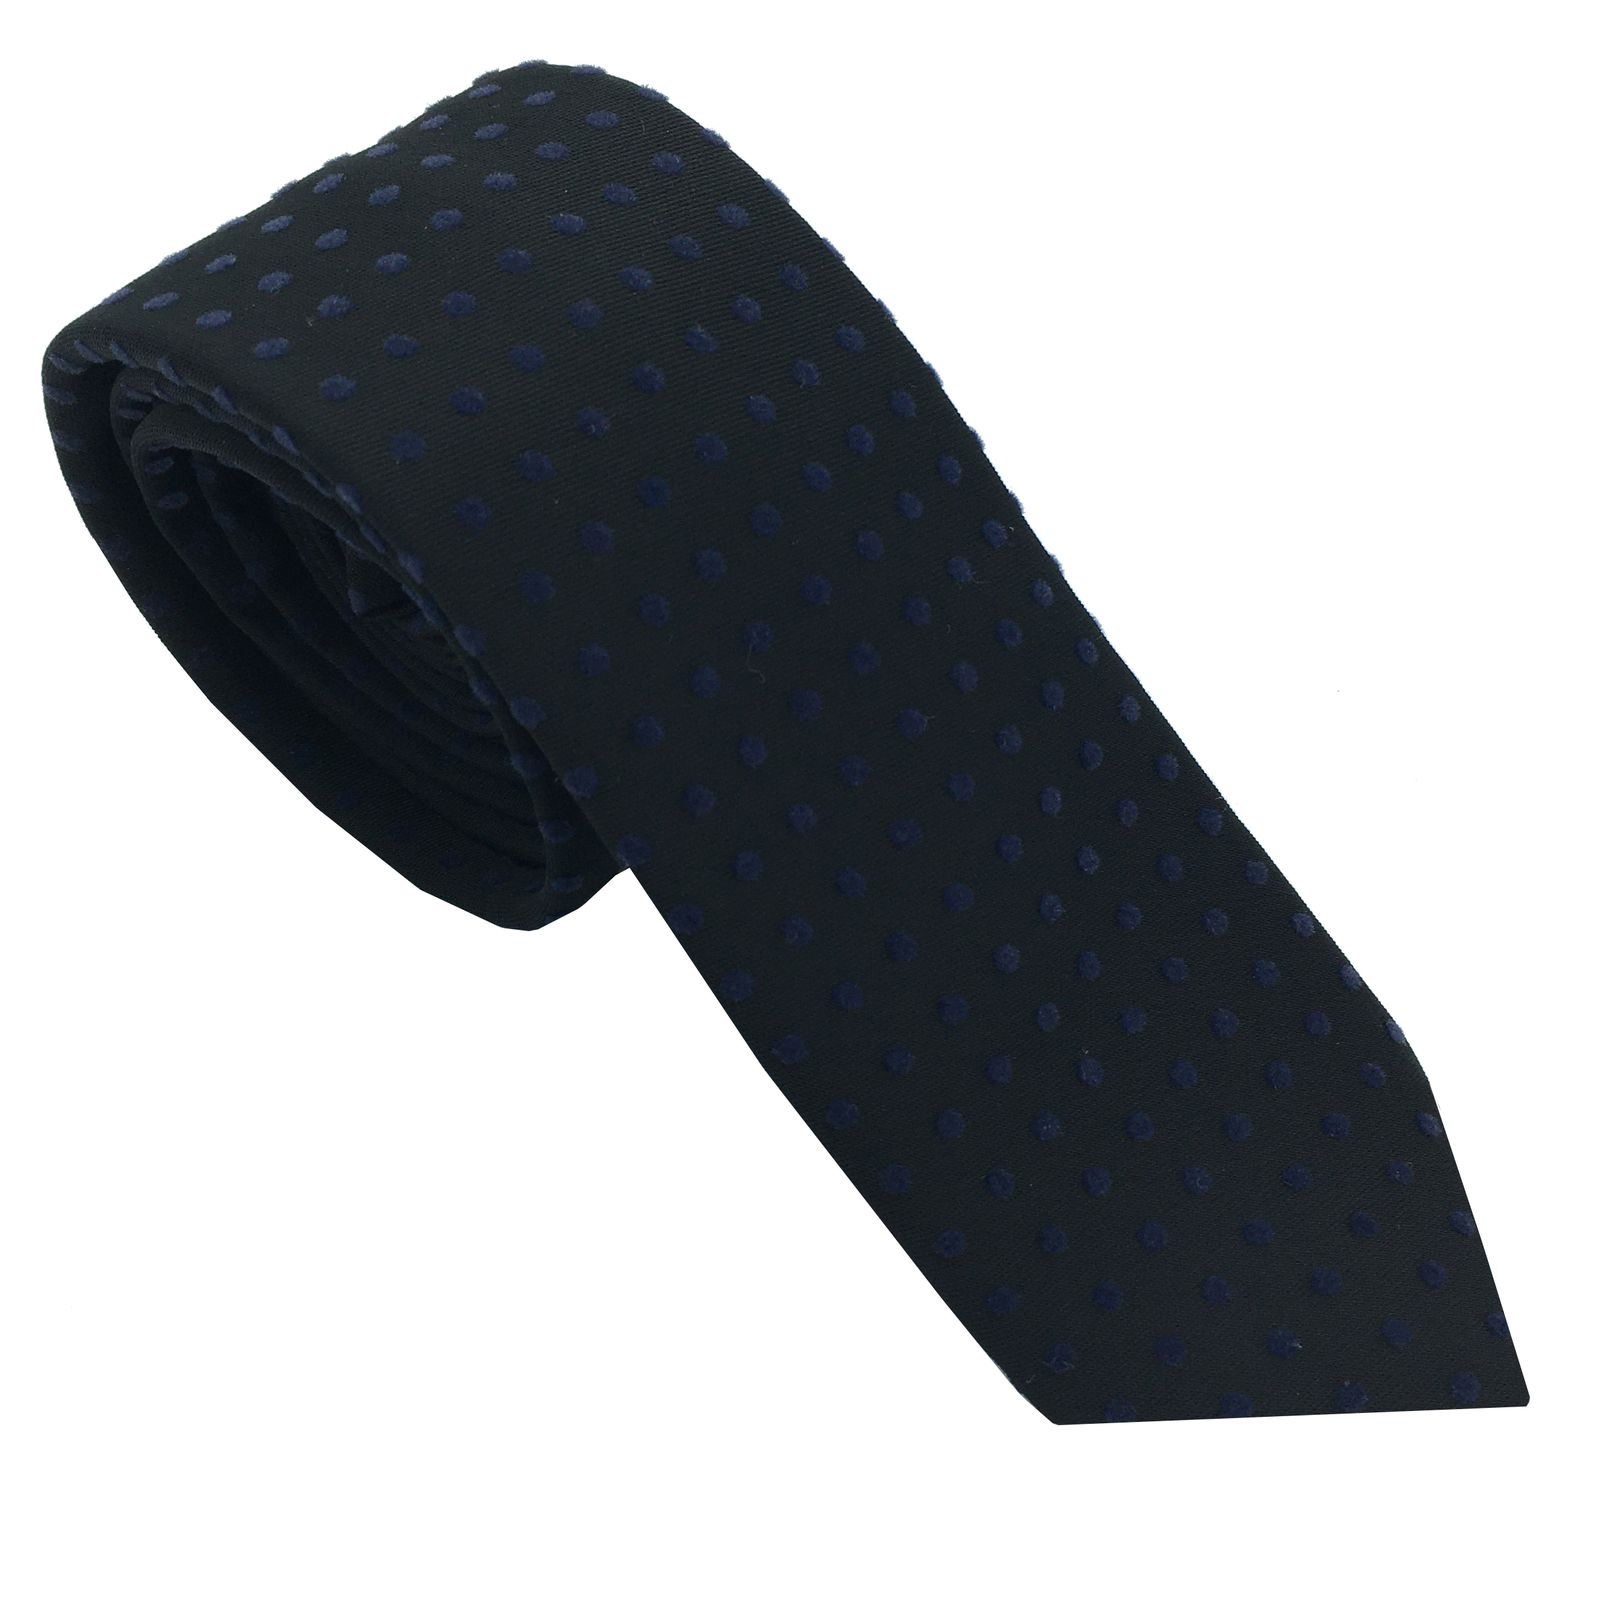  کراوات مردانه هکس ایران مدل KT-BK NQT -  - 1